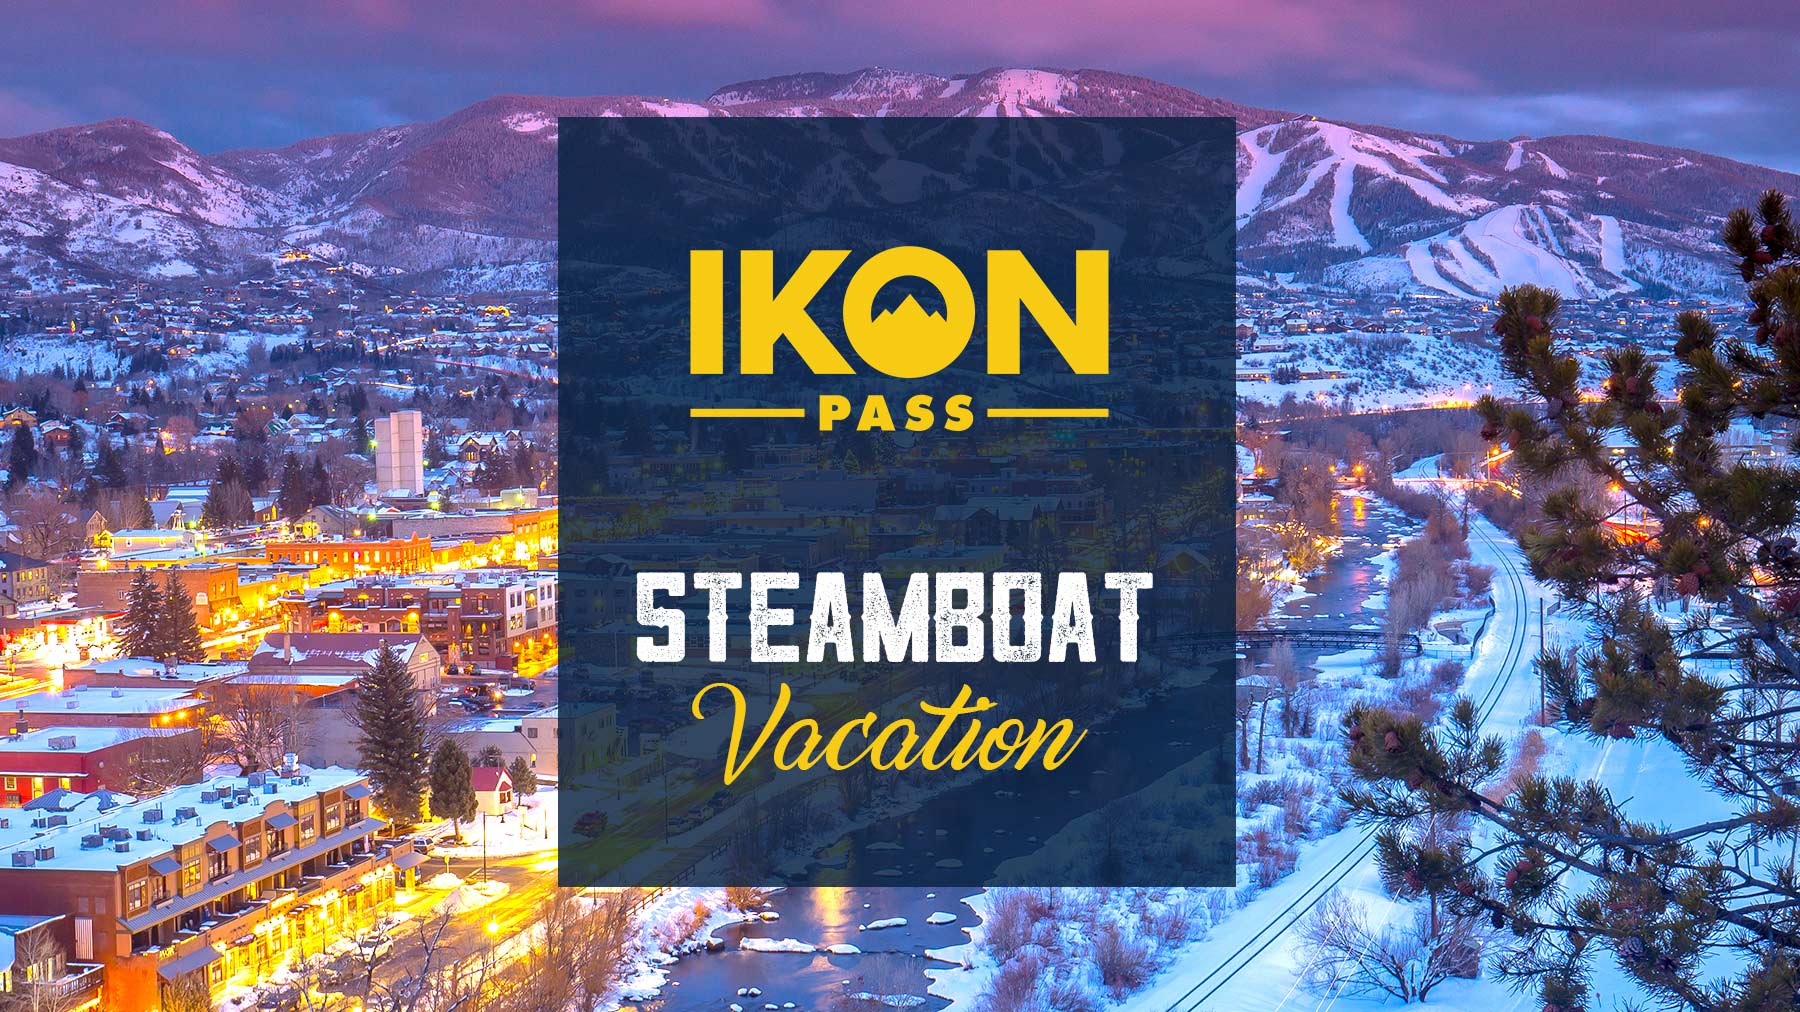 Ikon Pass Steamboat Vacation